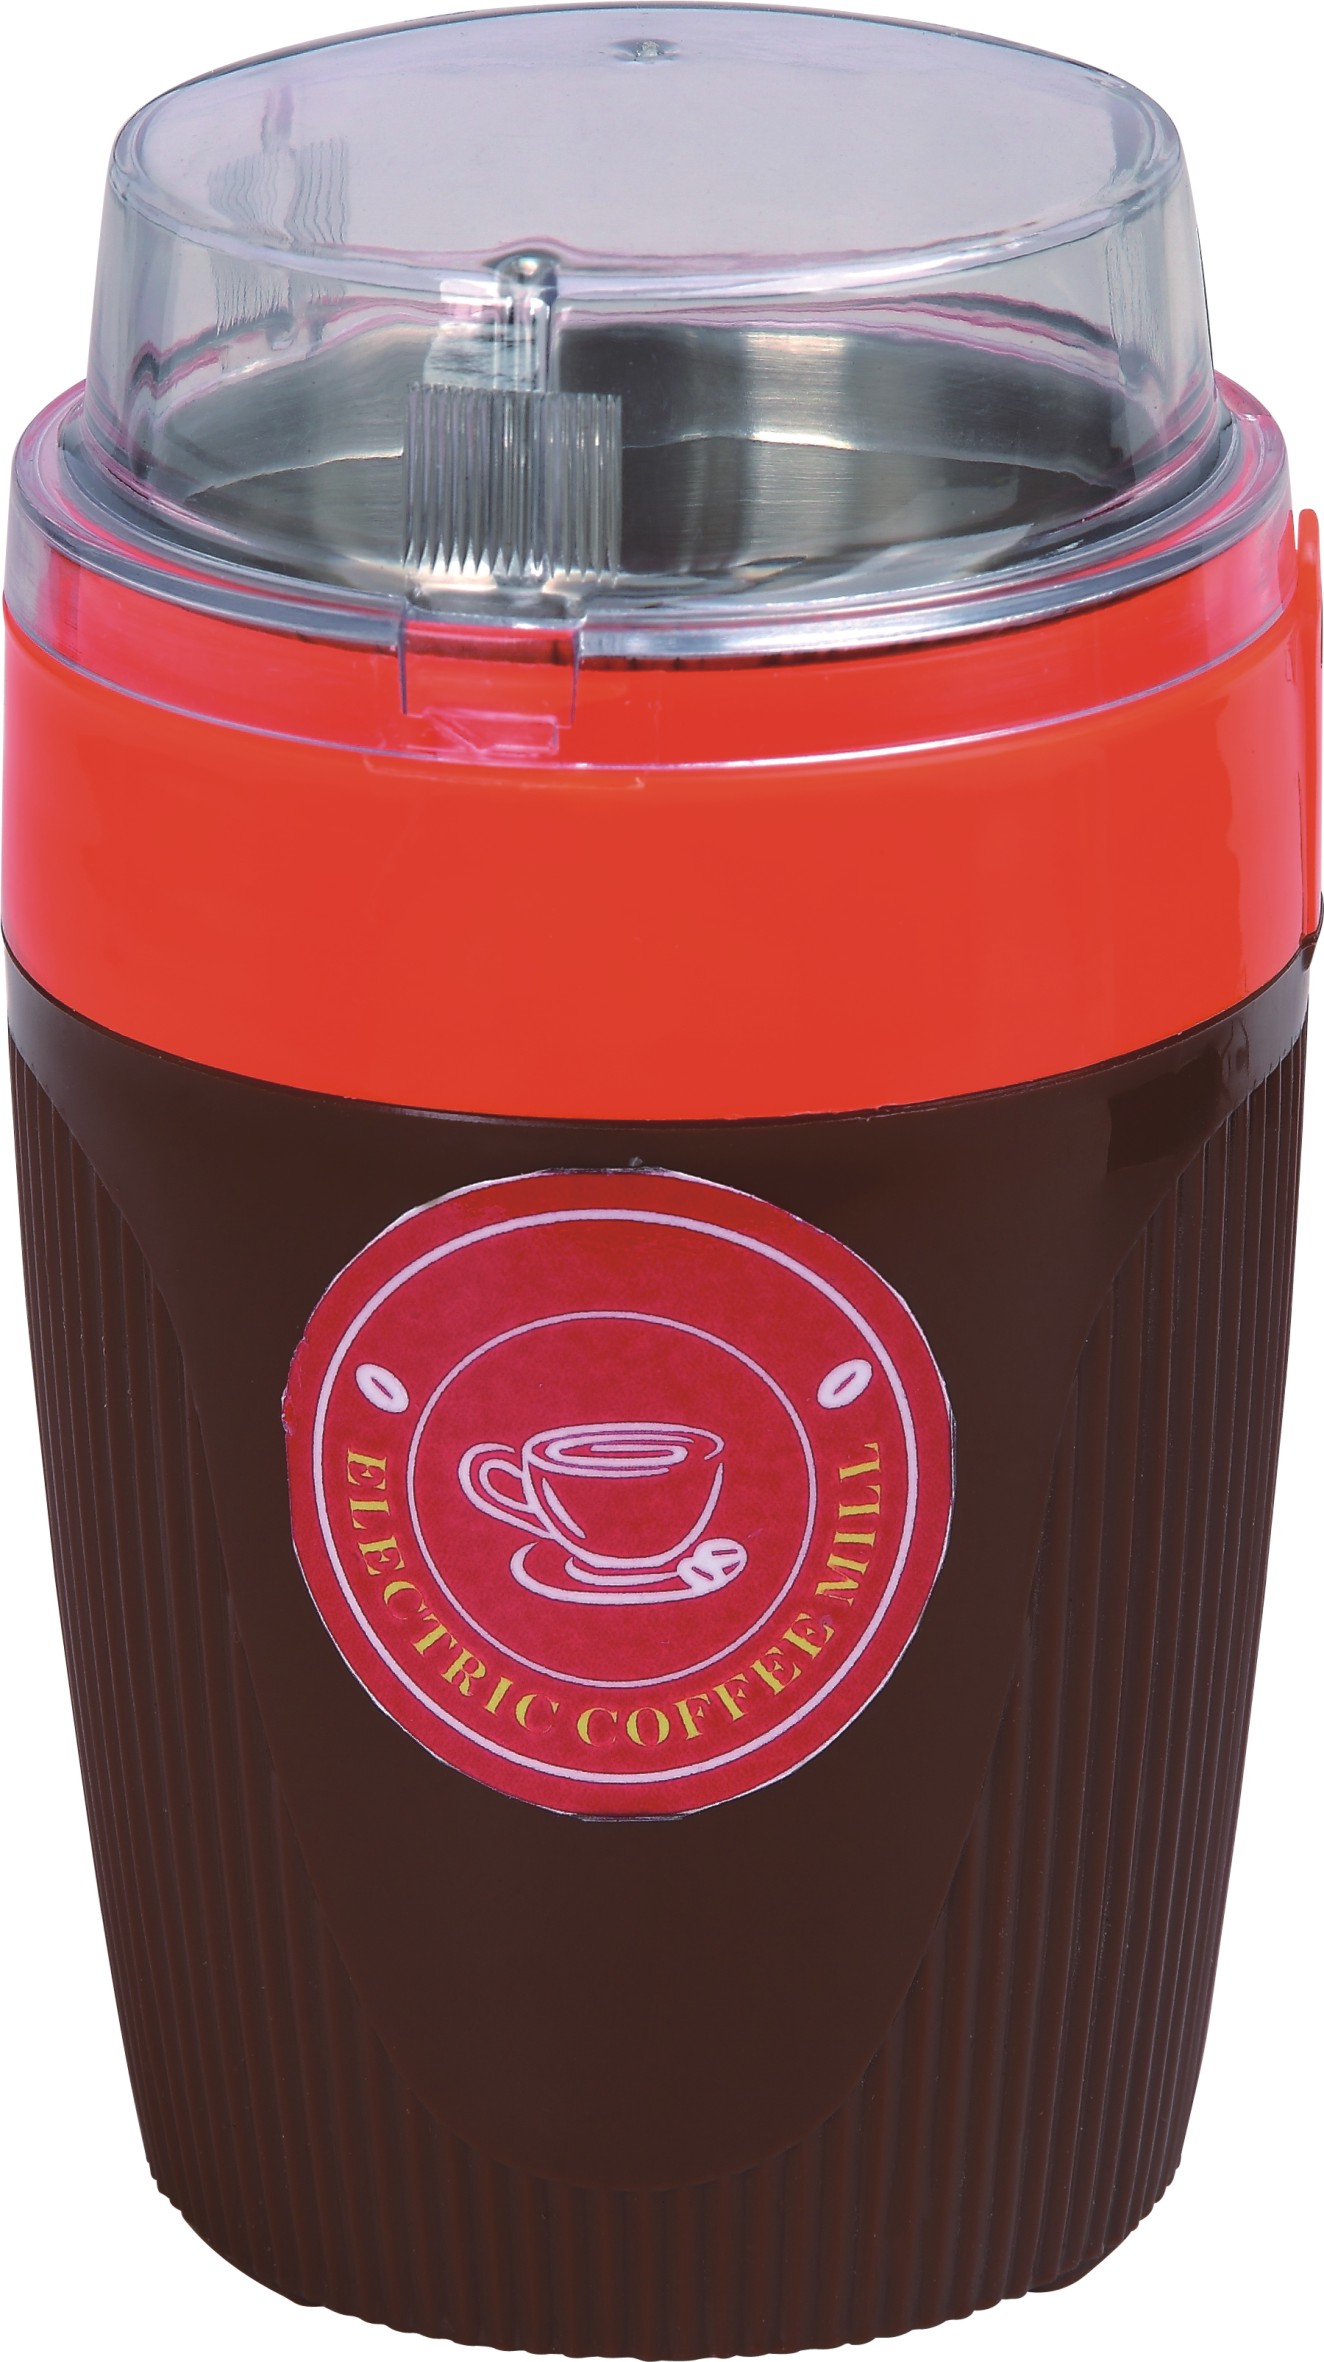 65gms coffee grinder